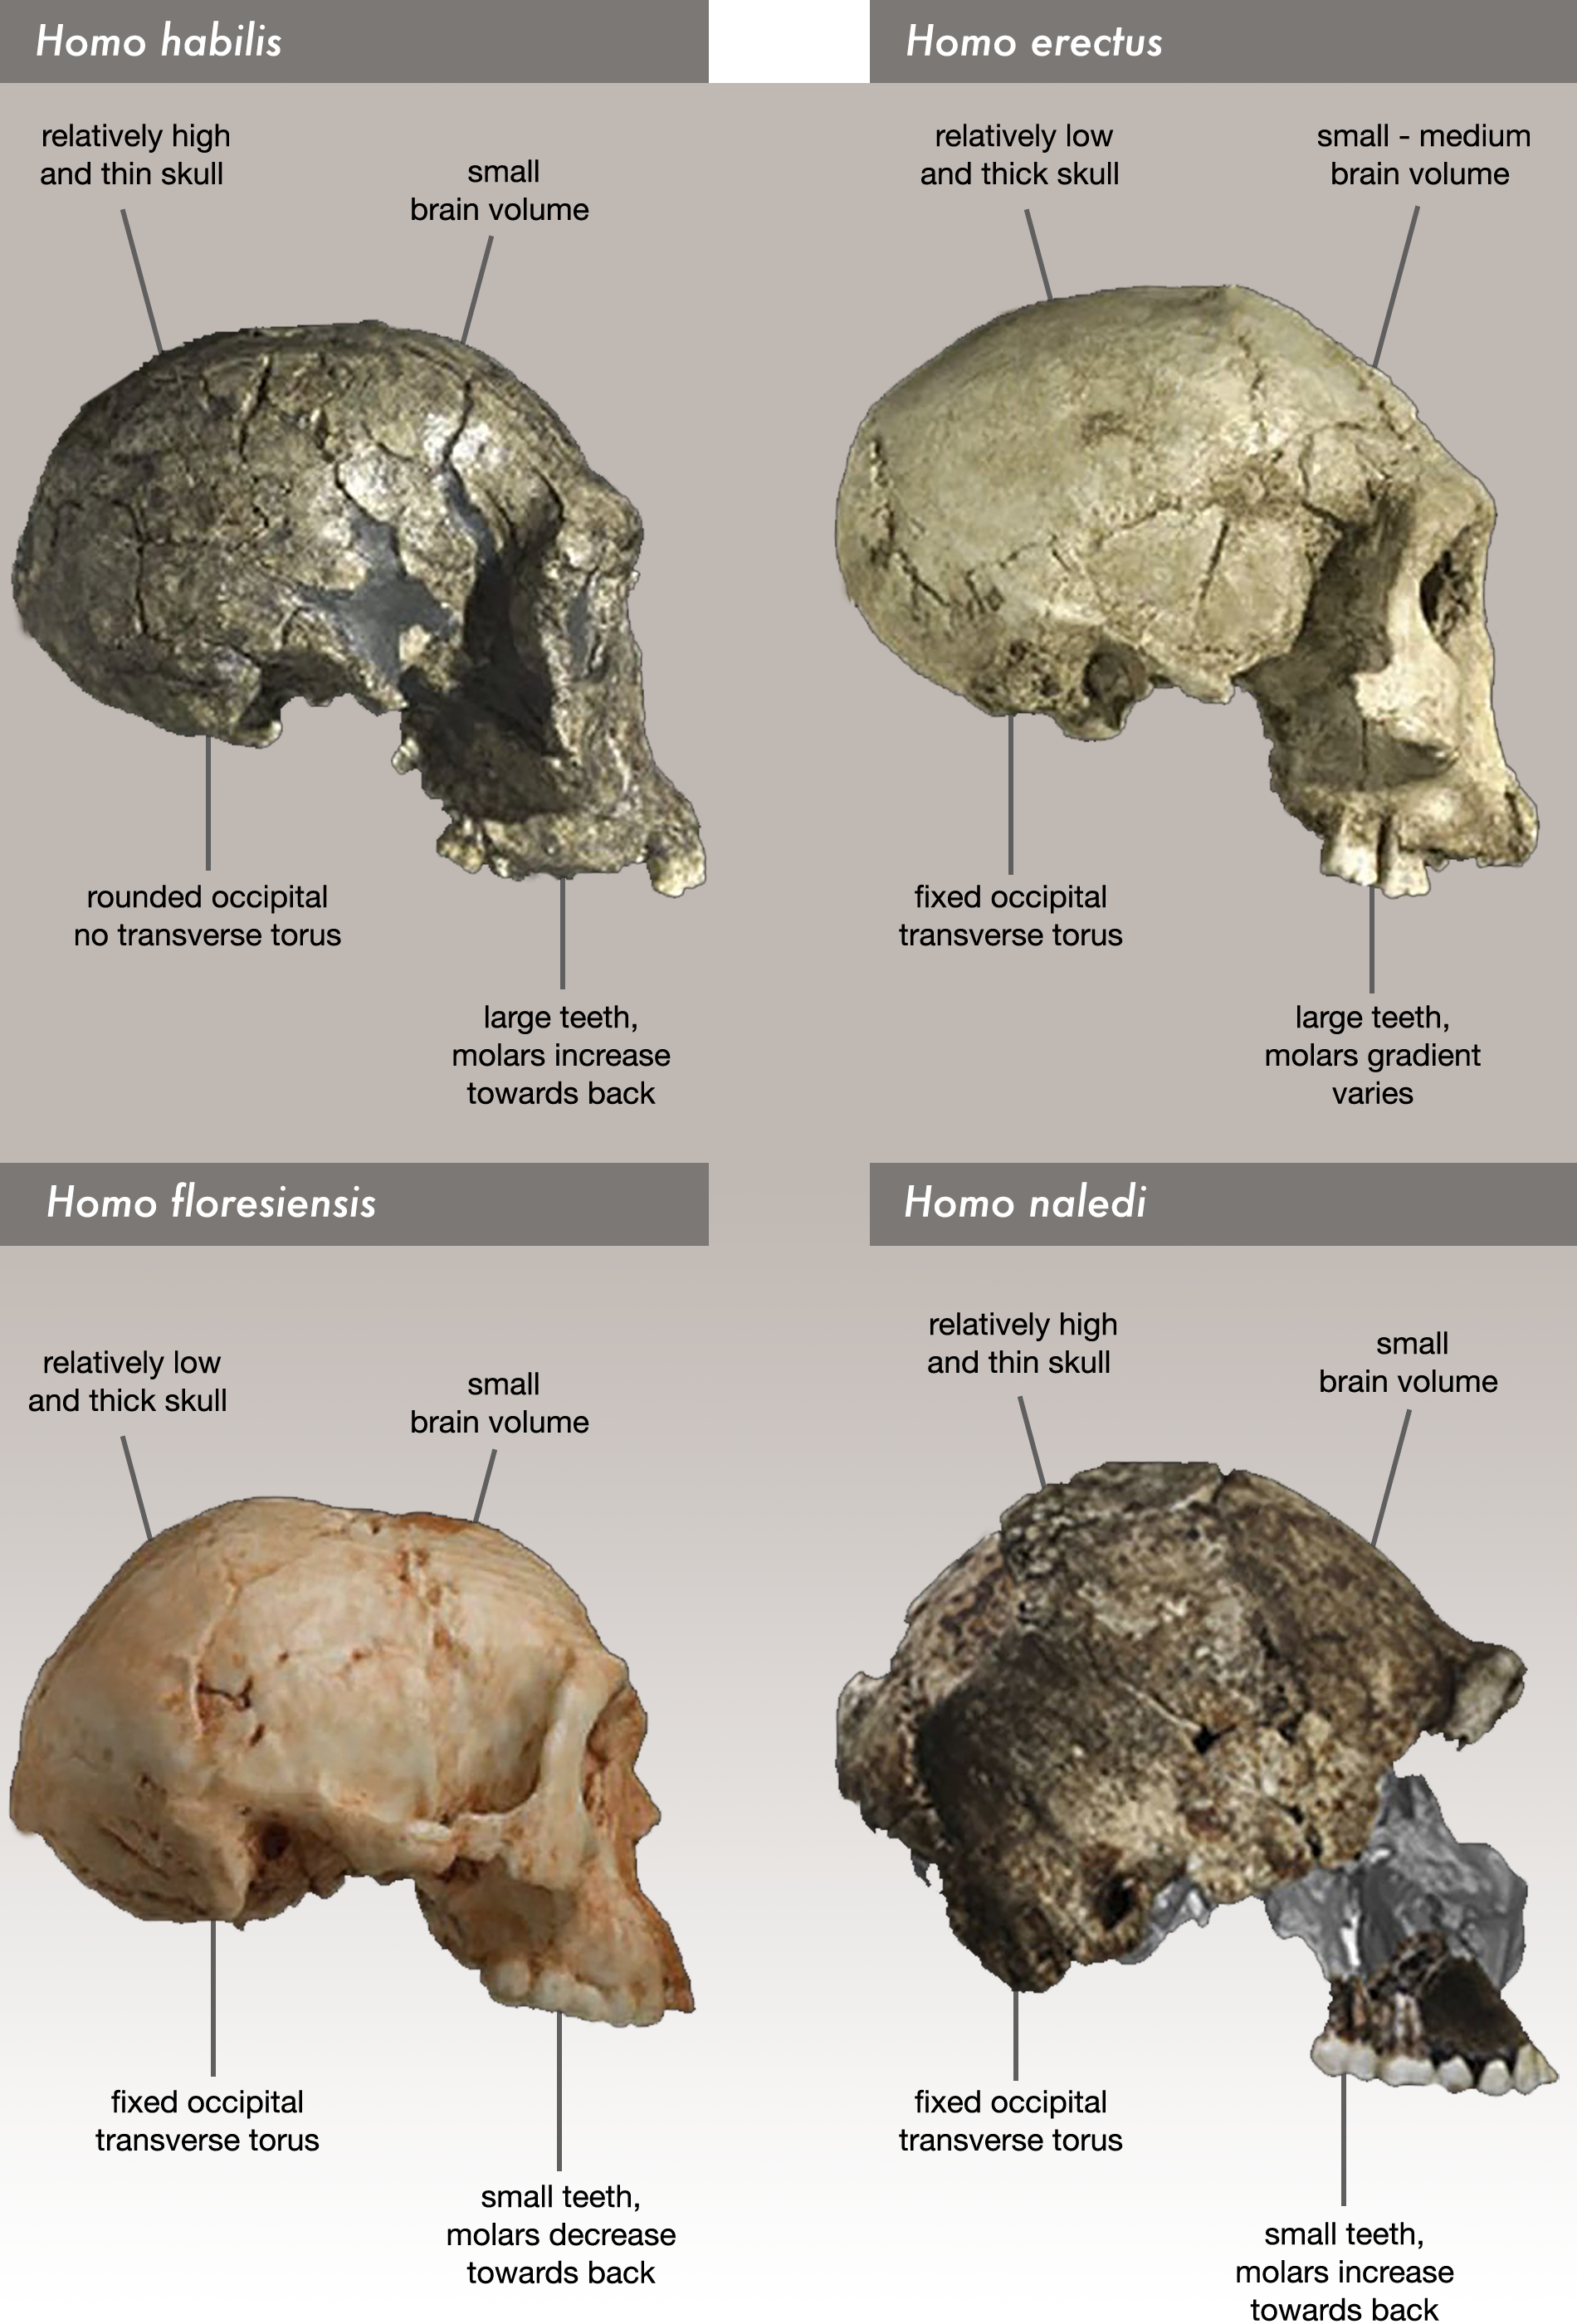 Comparison of skull features Homo naledi